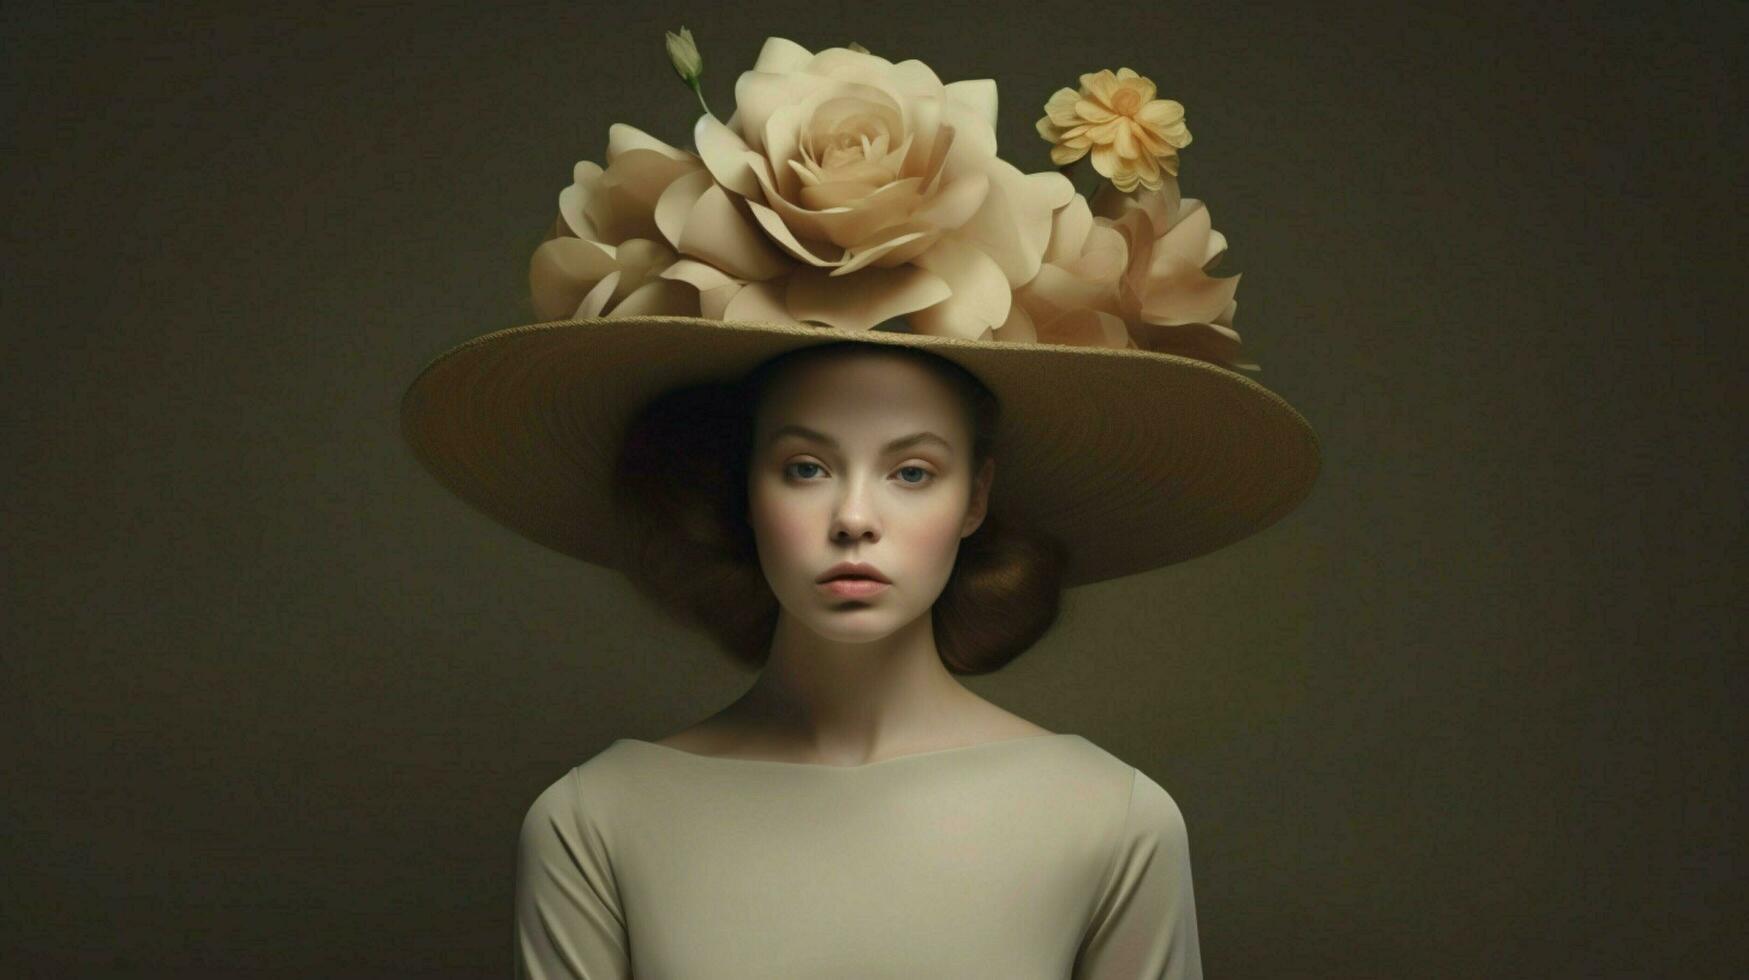 een vrouw met een hoed en een bloem Aan haar hoofd foto